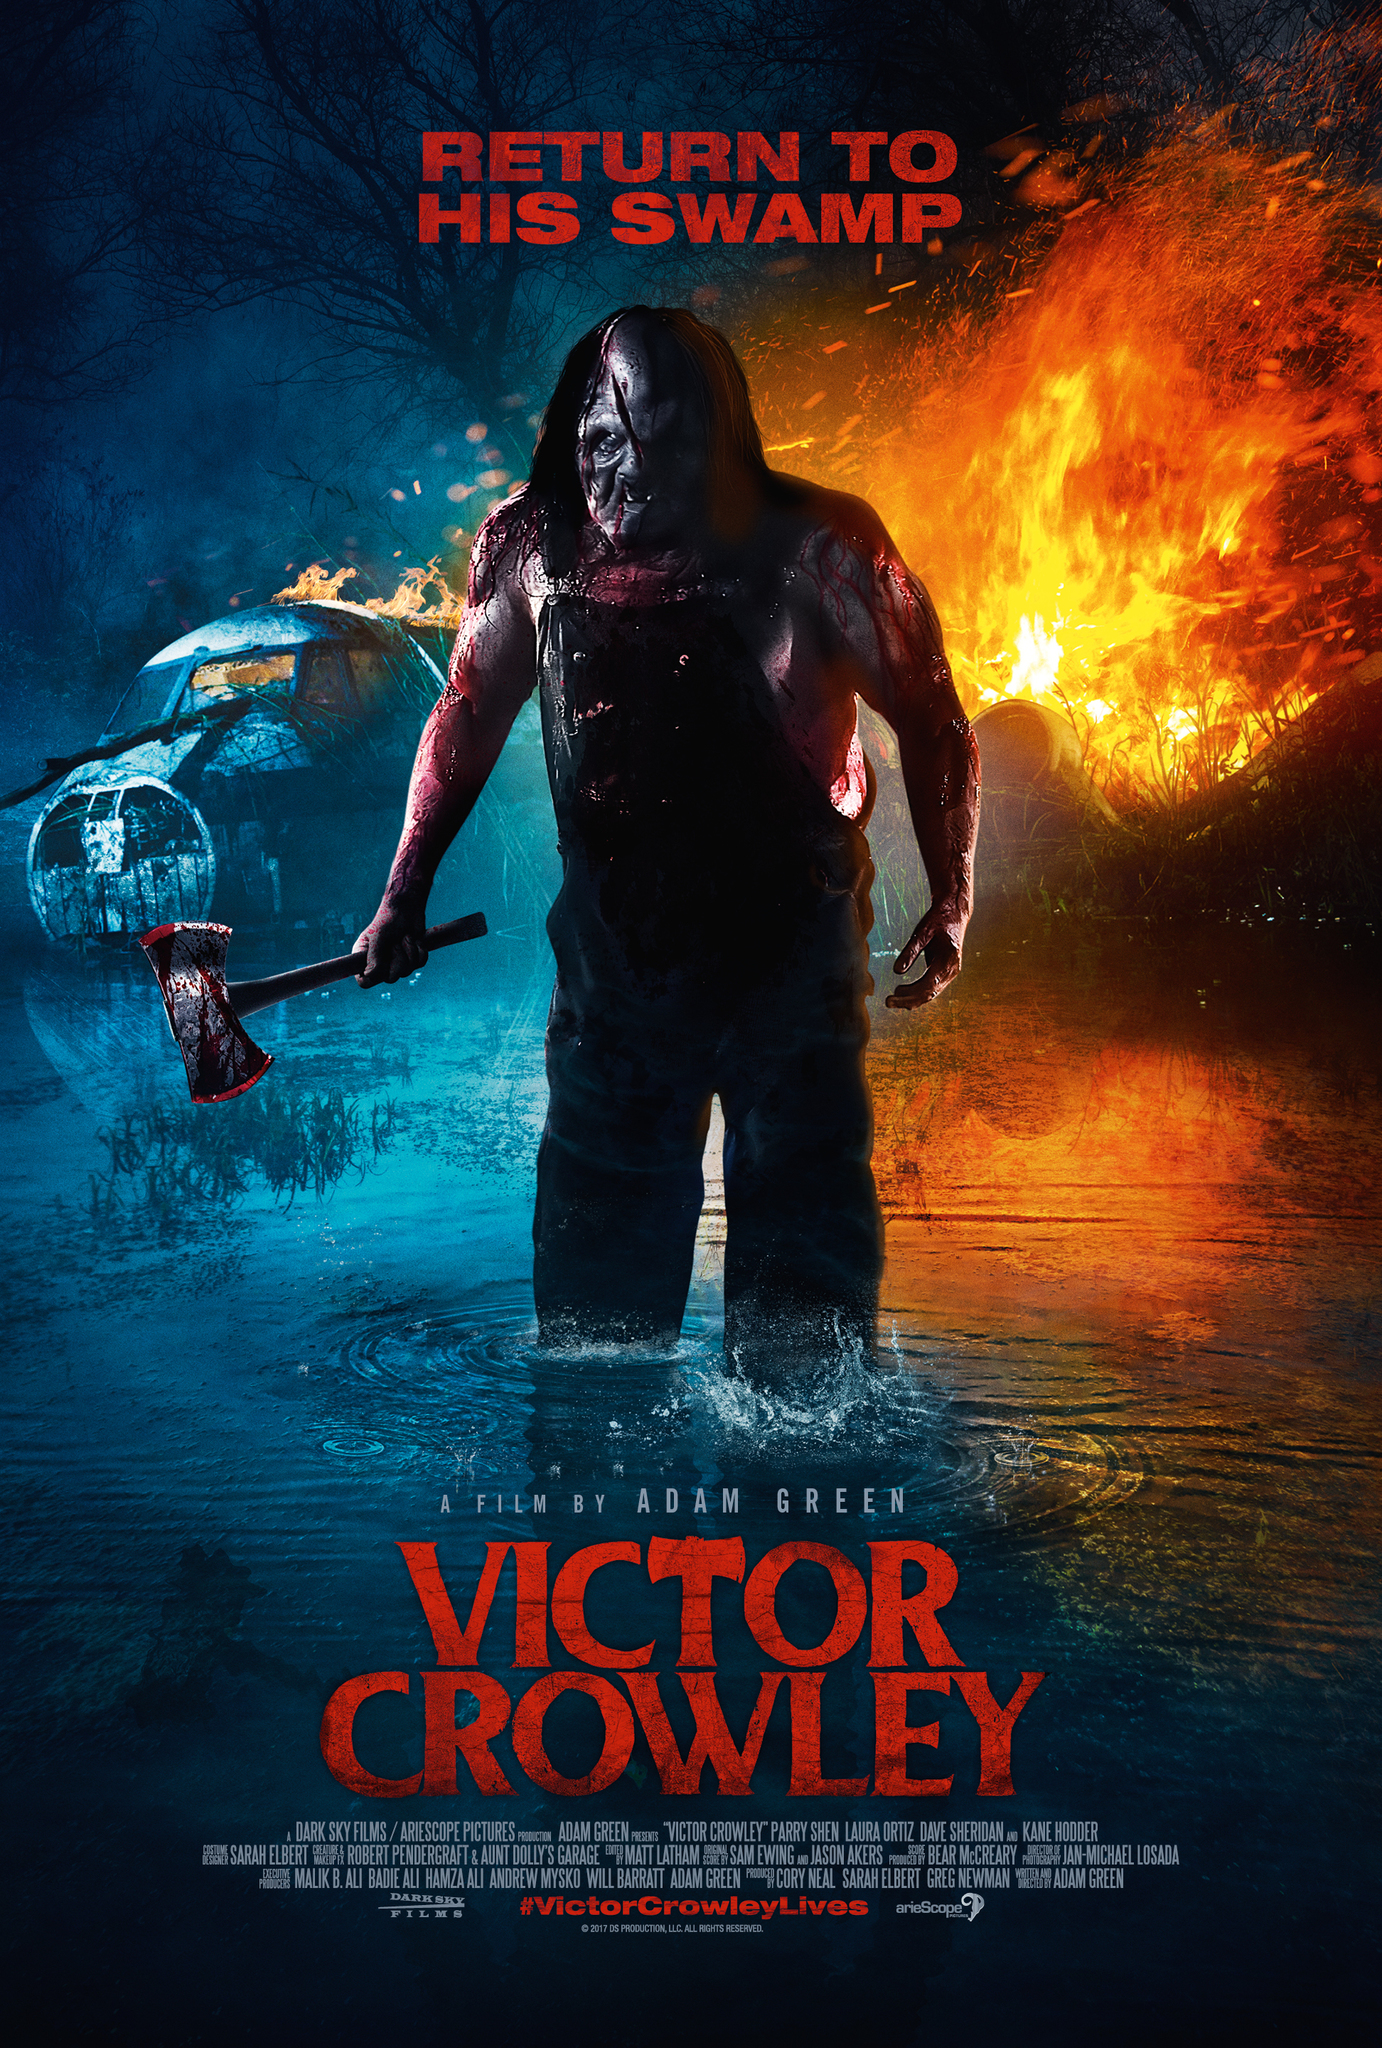 Nonton film Victor Crowley layarkaca21 indoxx1 ganool online streaming terbaru